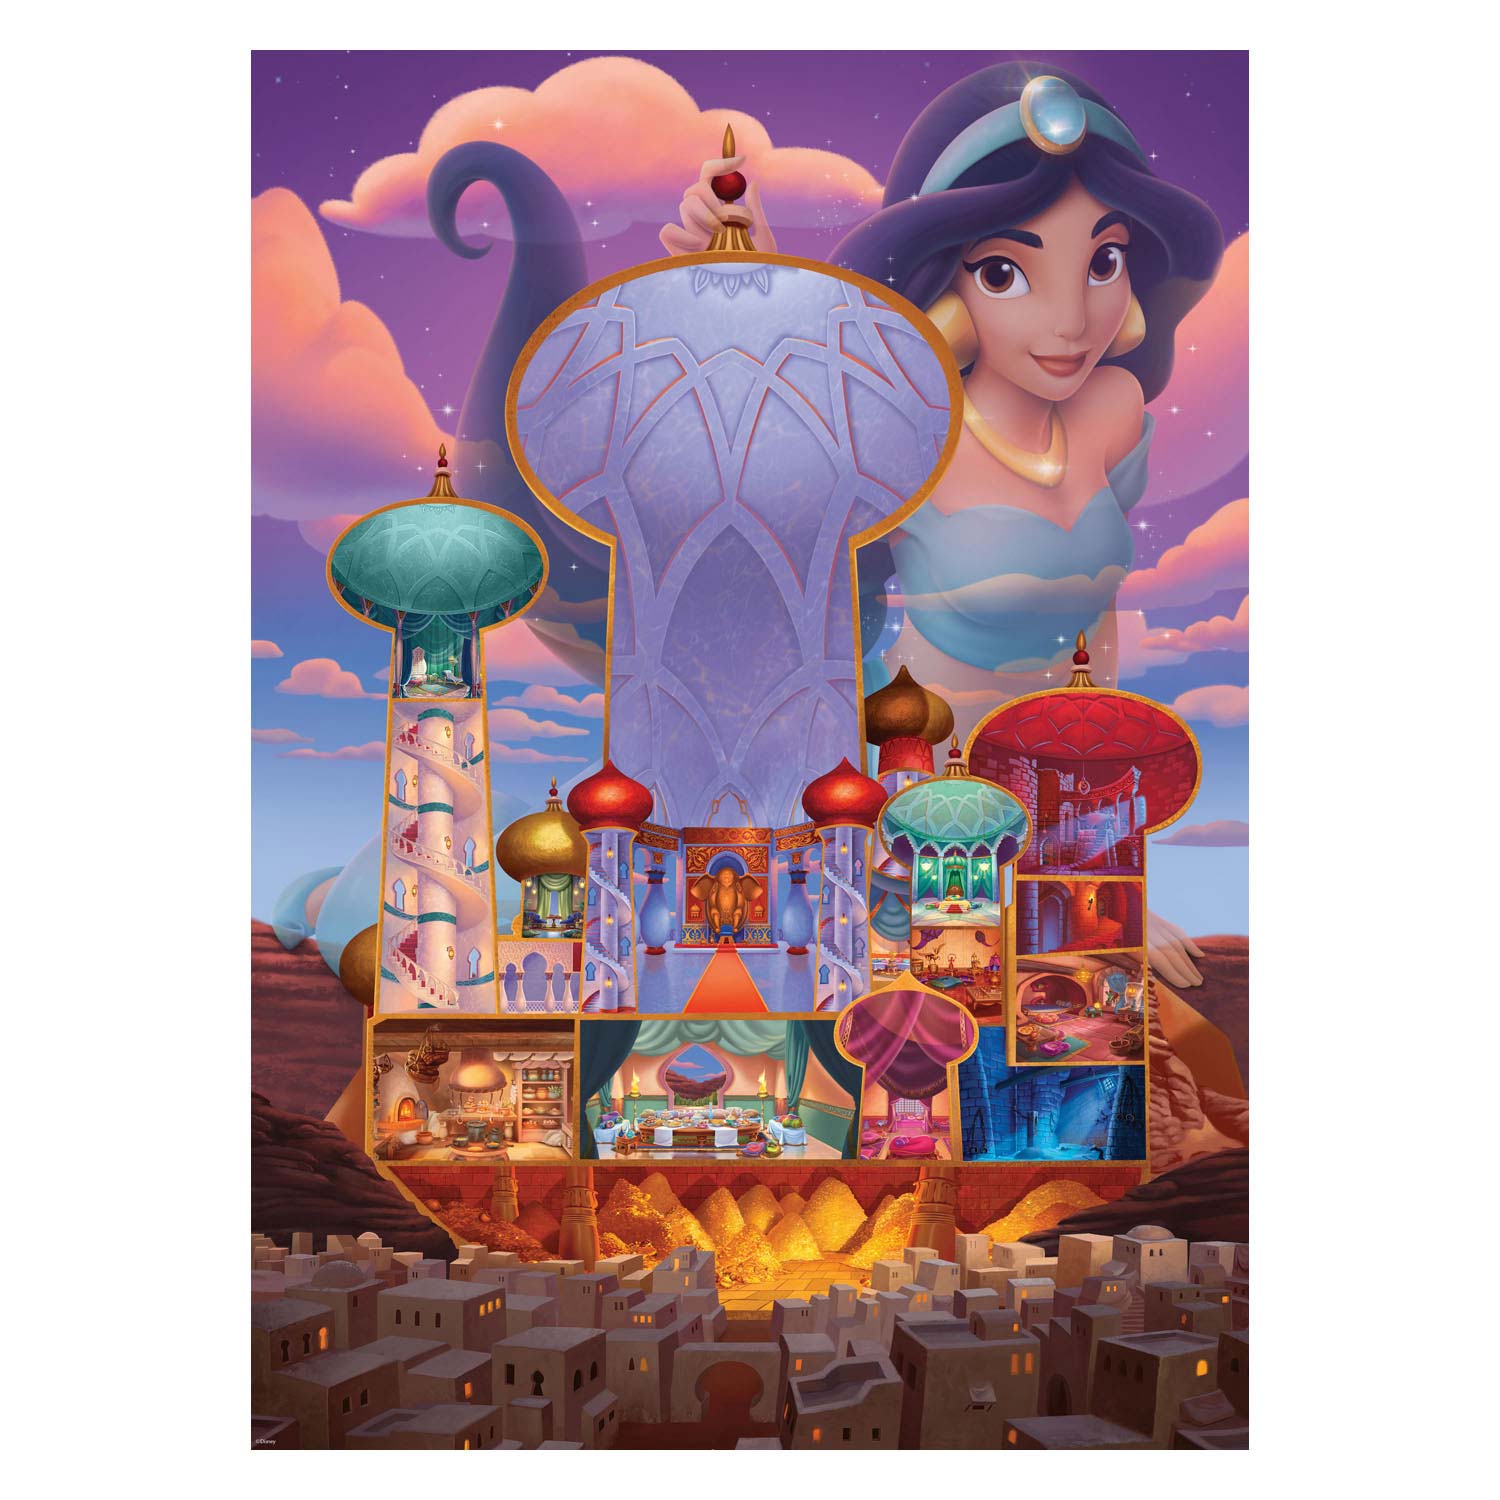 Puzzle Jasmine Châteaux Disney , 1000 pièces.